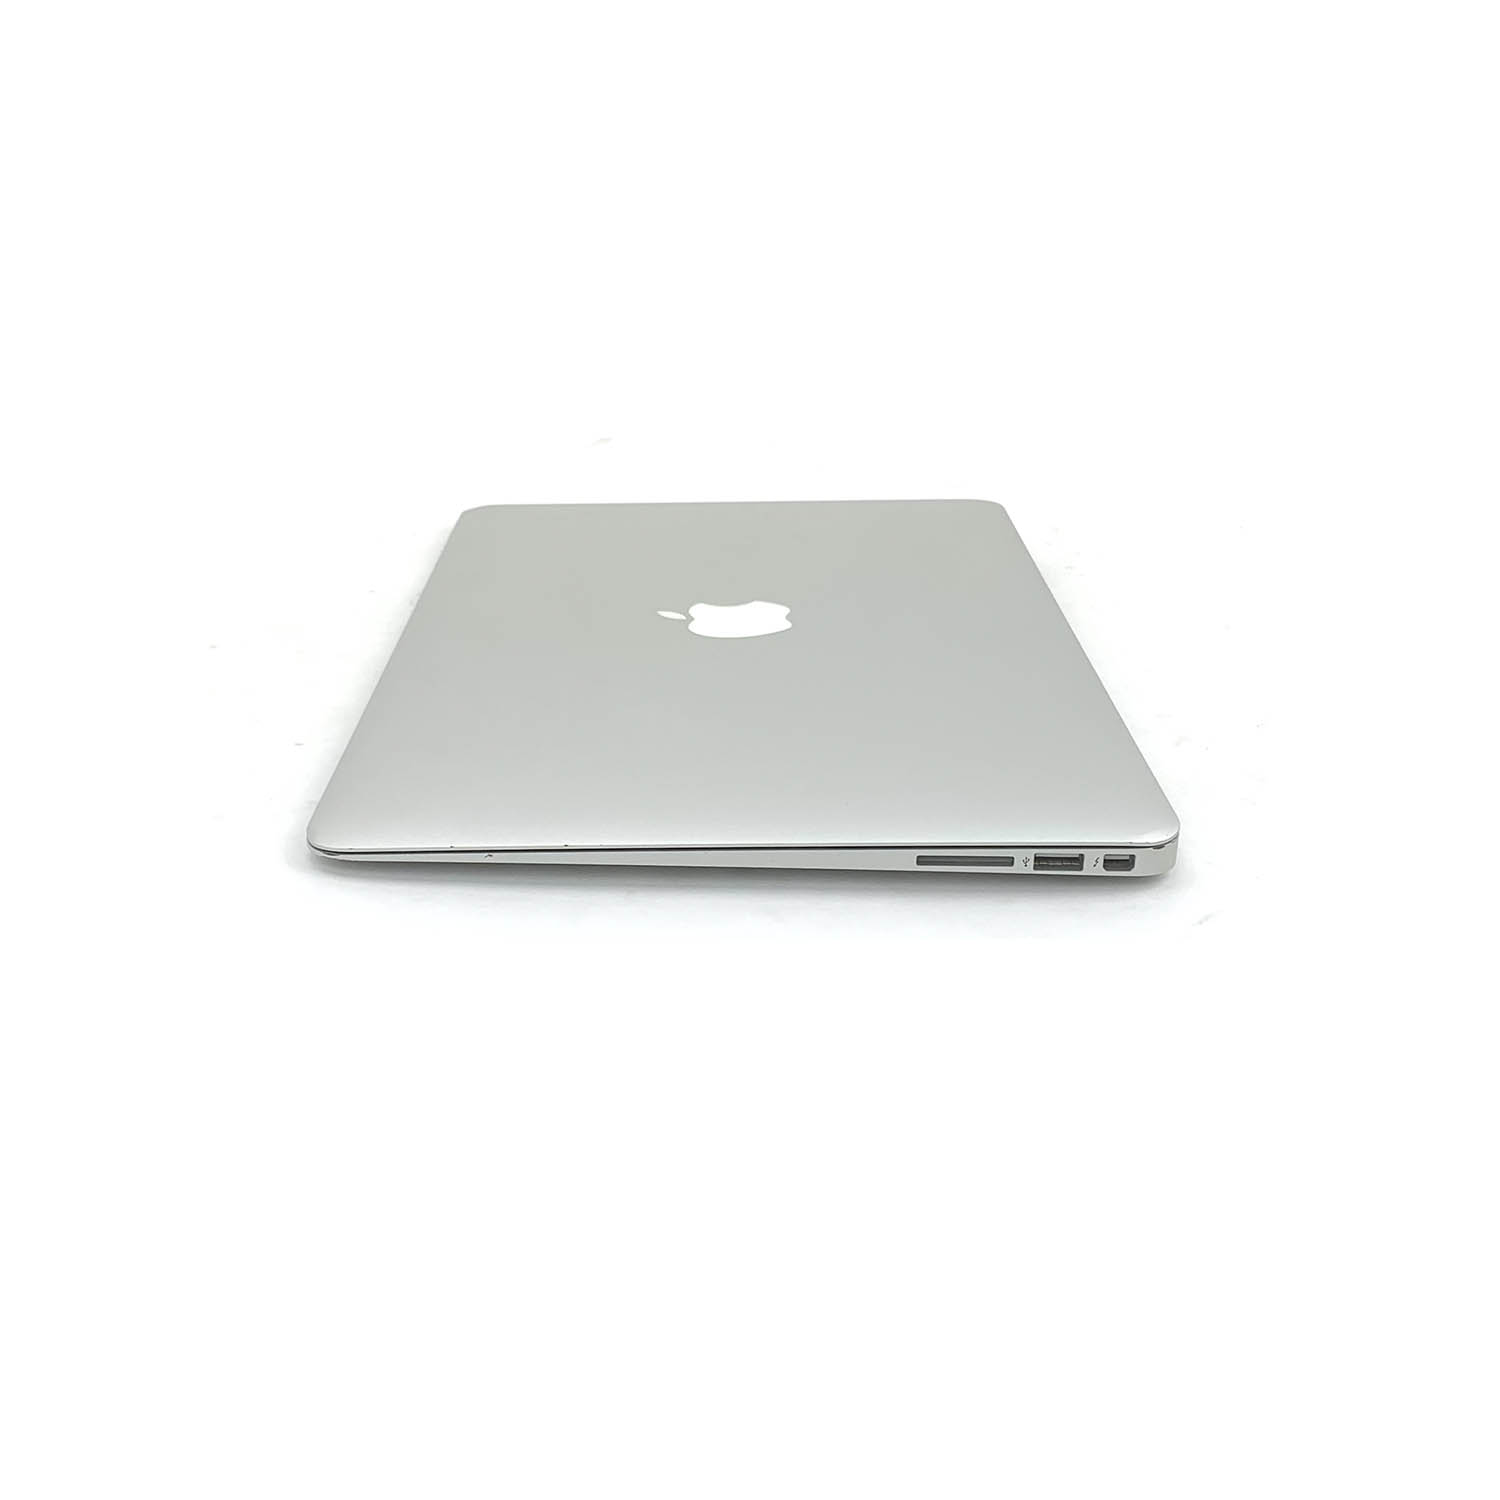 Macbook Air 13 i5 1.8Ghz 4GB 128GB SSD MD231LL/A  Seminovo